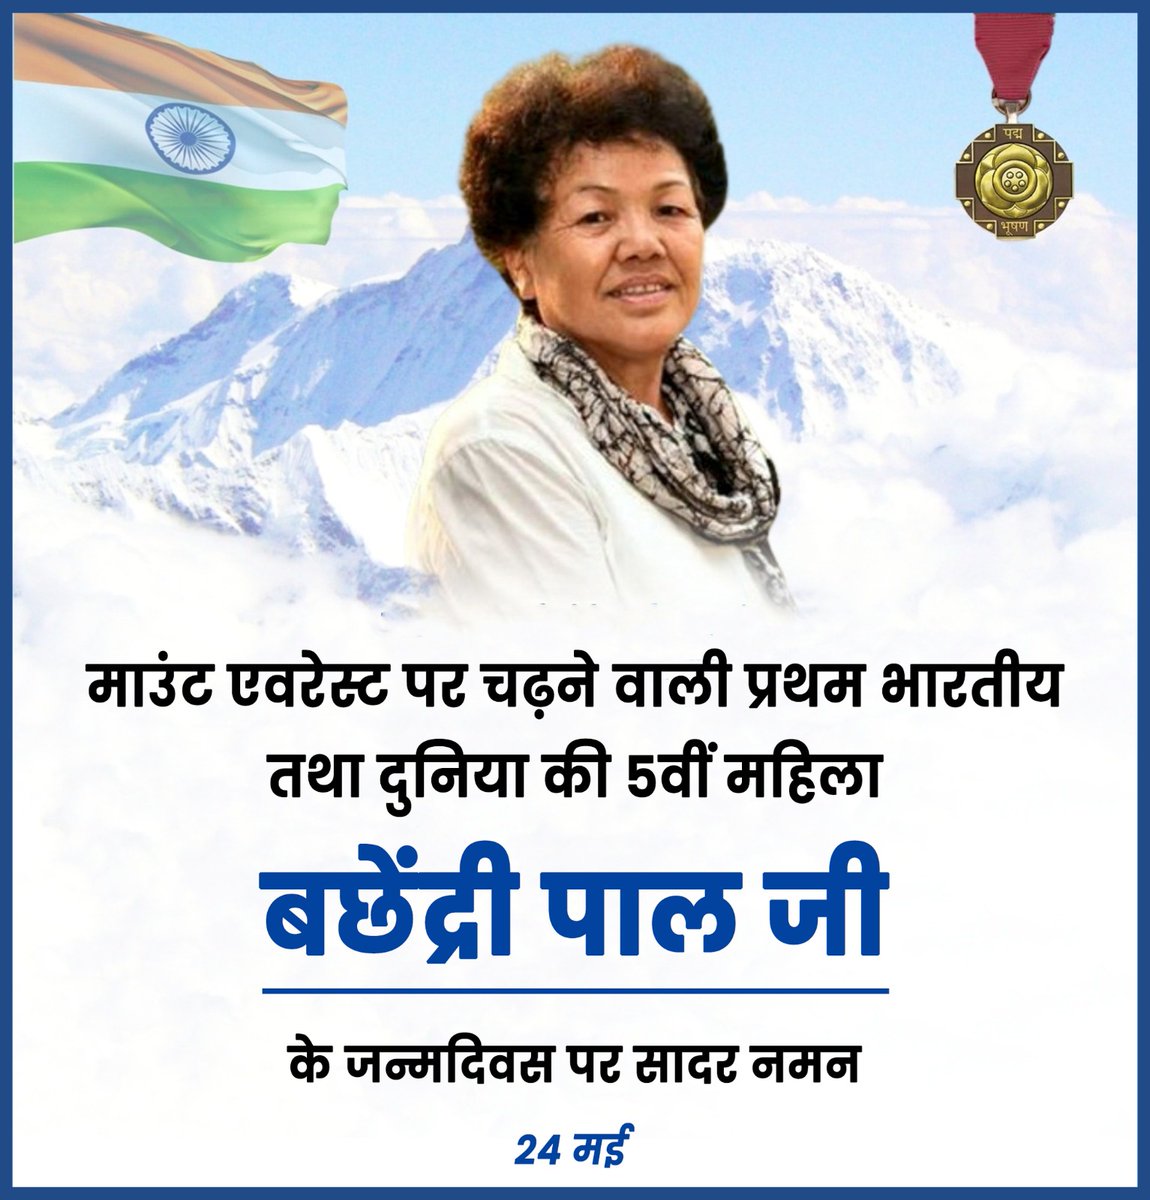 बछेंद्री पाल (जन्मदिवस  24 मई 1954), माउंट एवरेस्ट पर चढ़ने वाली प्रथम भारतीय महिला है। सन 1984 में इन्होंने माउंट एवरेस्ट फतह किया था। 
#everest #nepal #himalayas #mountains #trekking #adventure #everestbasecamp #visitnepal #travel #himalaya #mountaineering #mountain